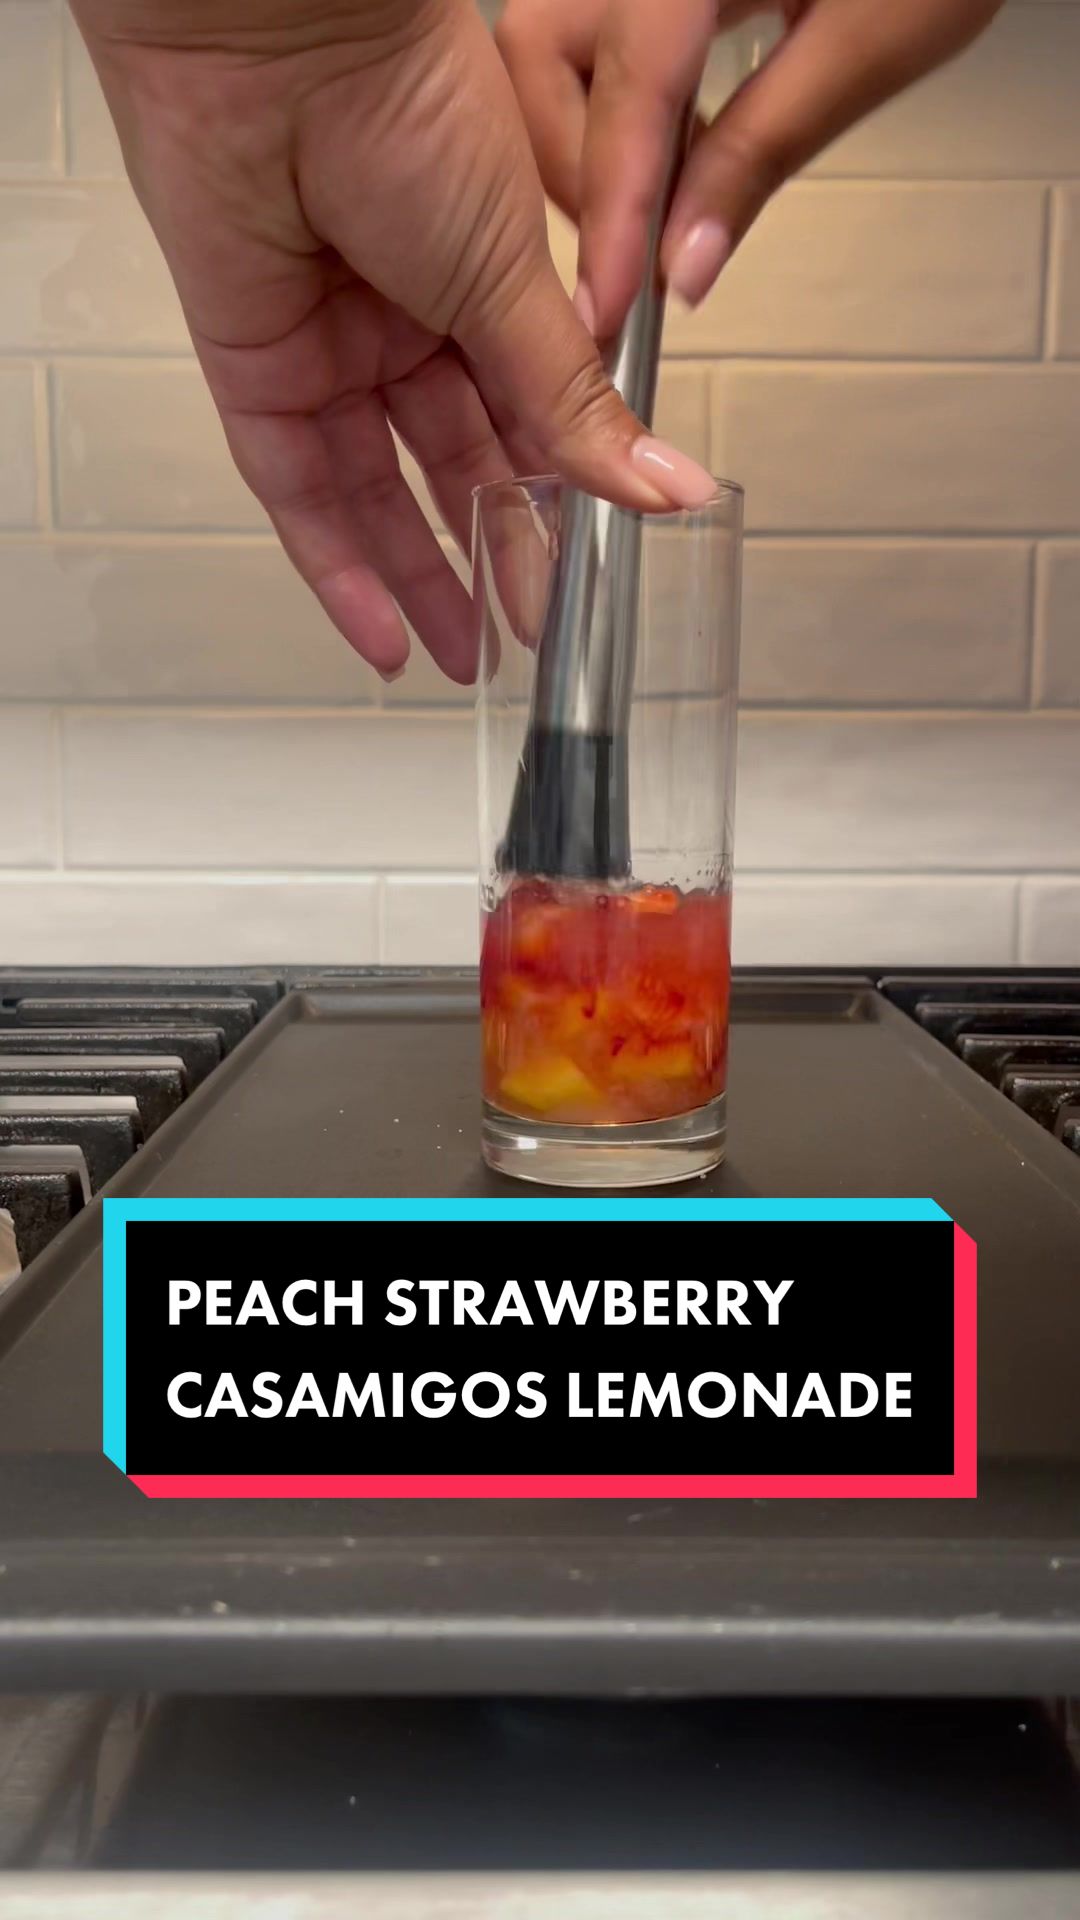 @Peach strawberry casamigos lemonade #fyp #drinks #alcoholtik...